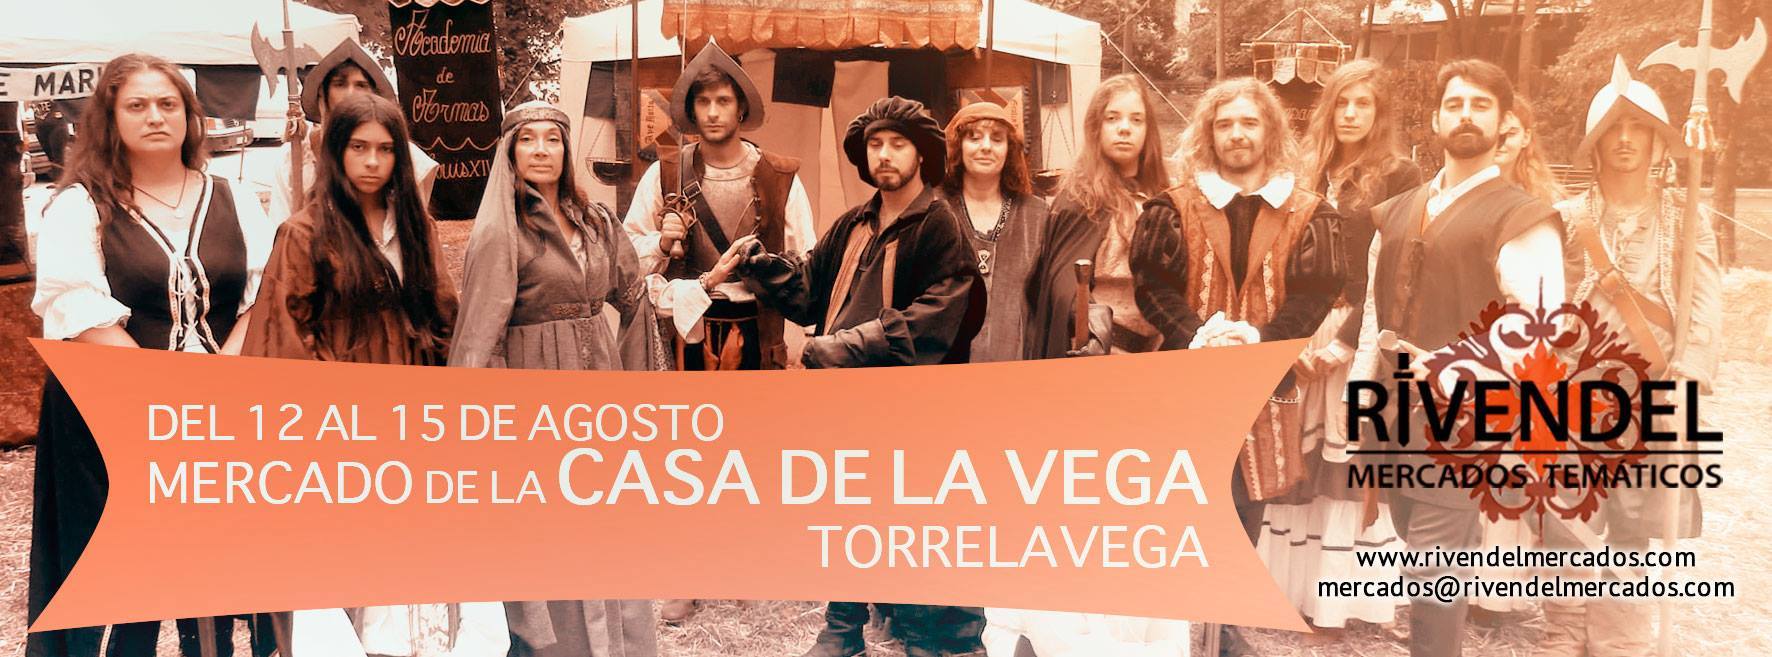 MERCADO DE LA CASA DE LA VEGA en Torrelavega, Cantabria del 12 al 15 de Agosto del 2017